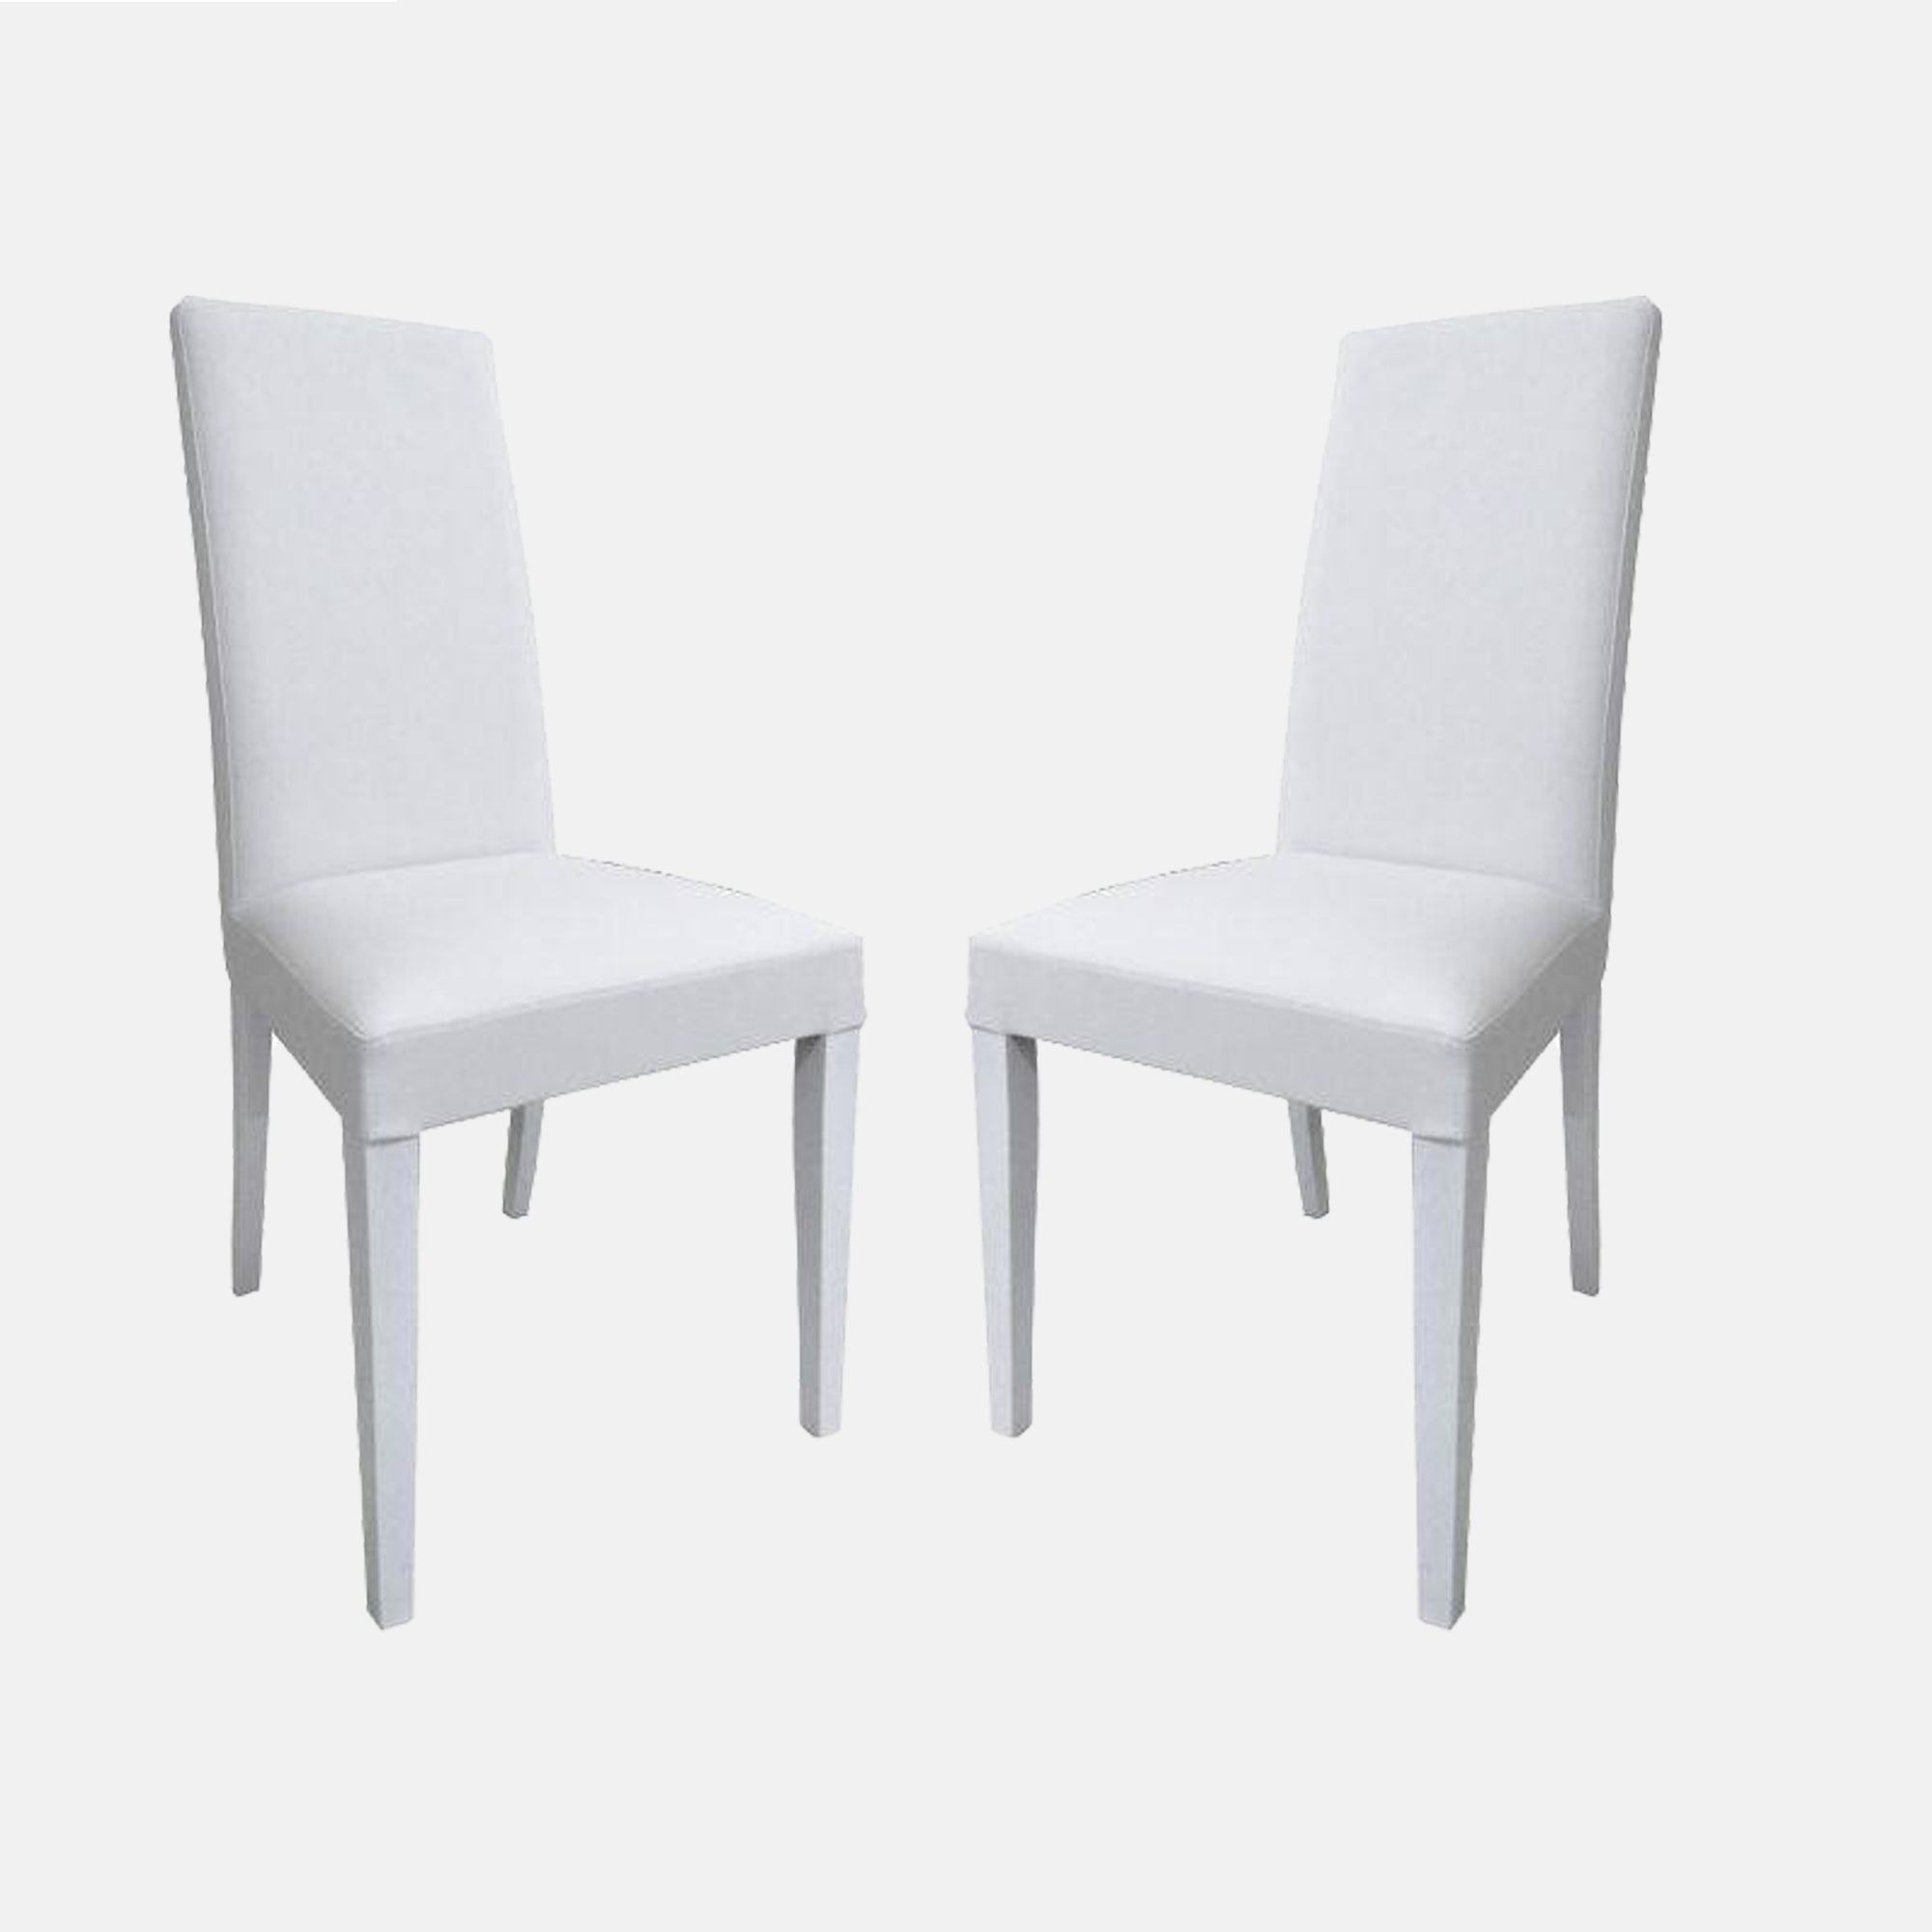 2 Sedie Classiche sedile legno Cucina Sala Soggiorno W594/NLbis